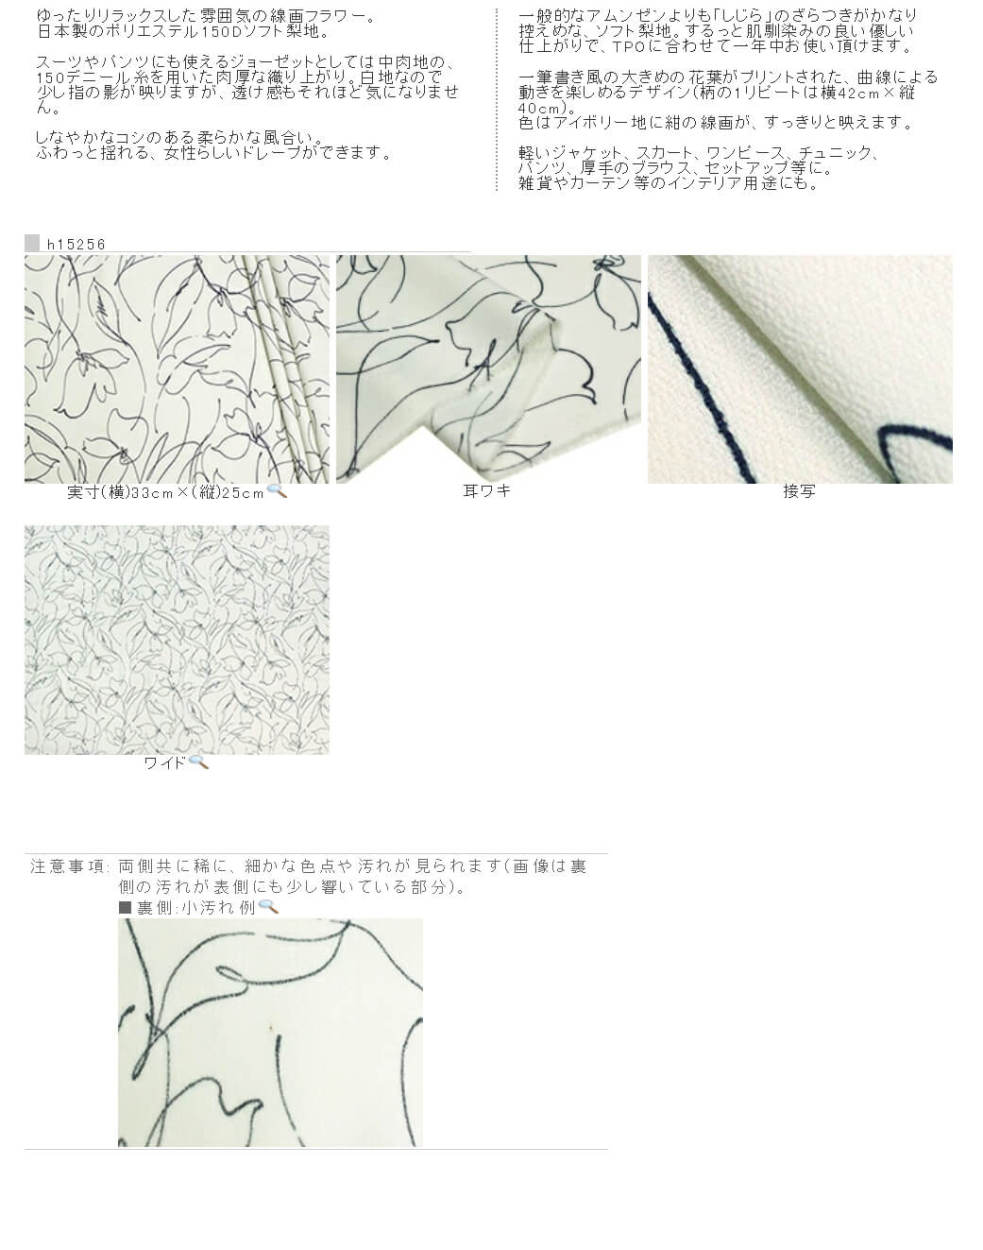 日本製 ポリエステル 150Dソフト梨地 線画ラフフラワープリント